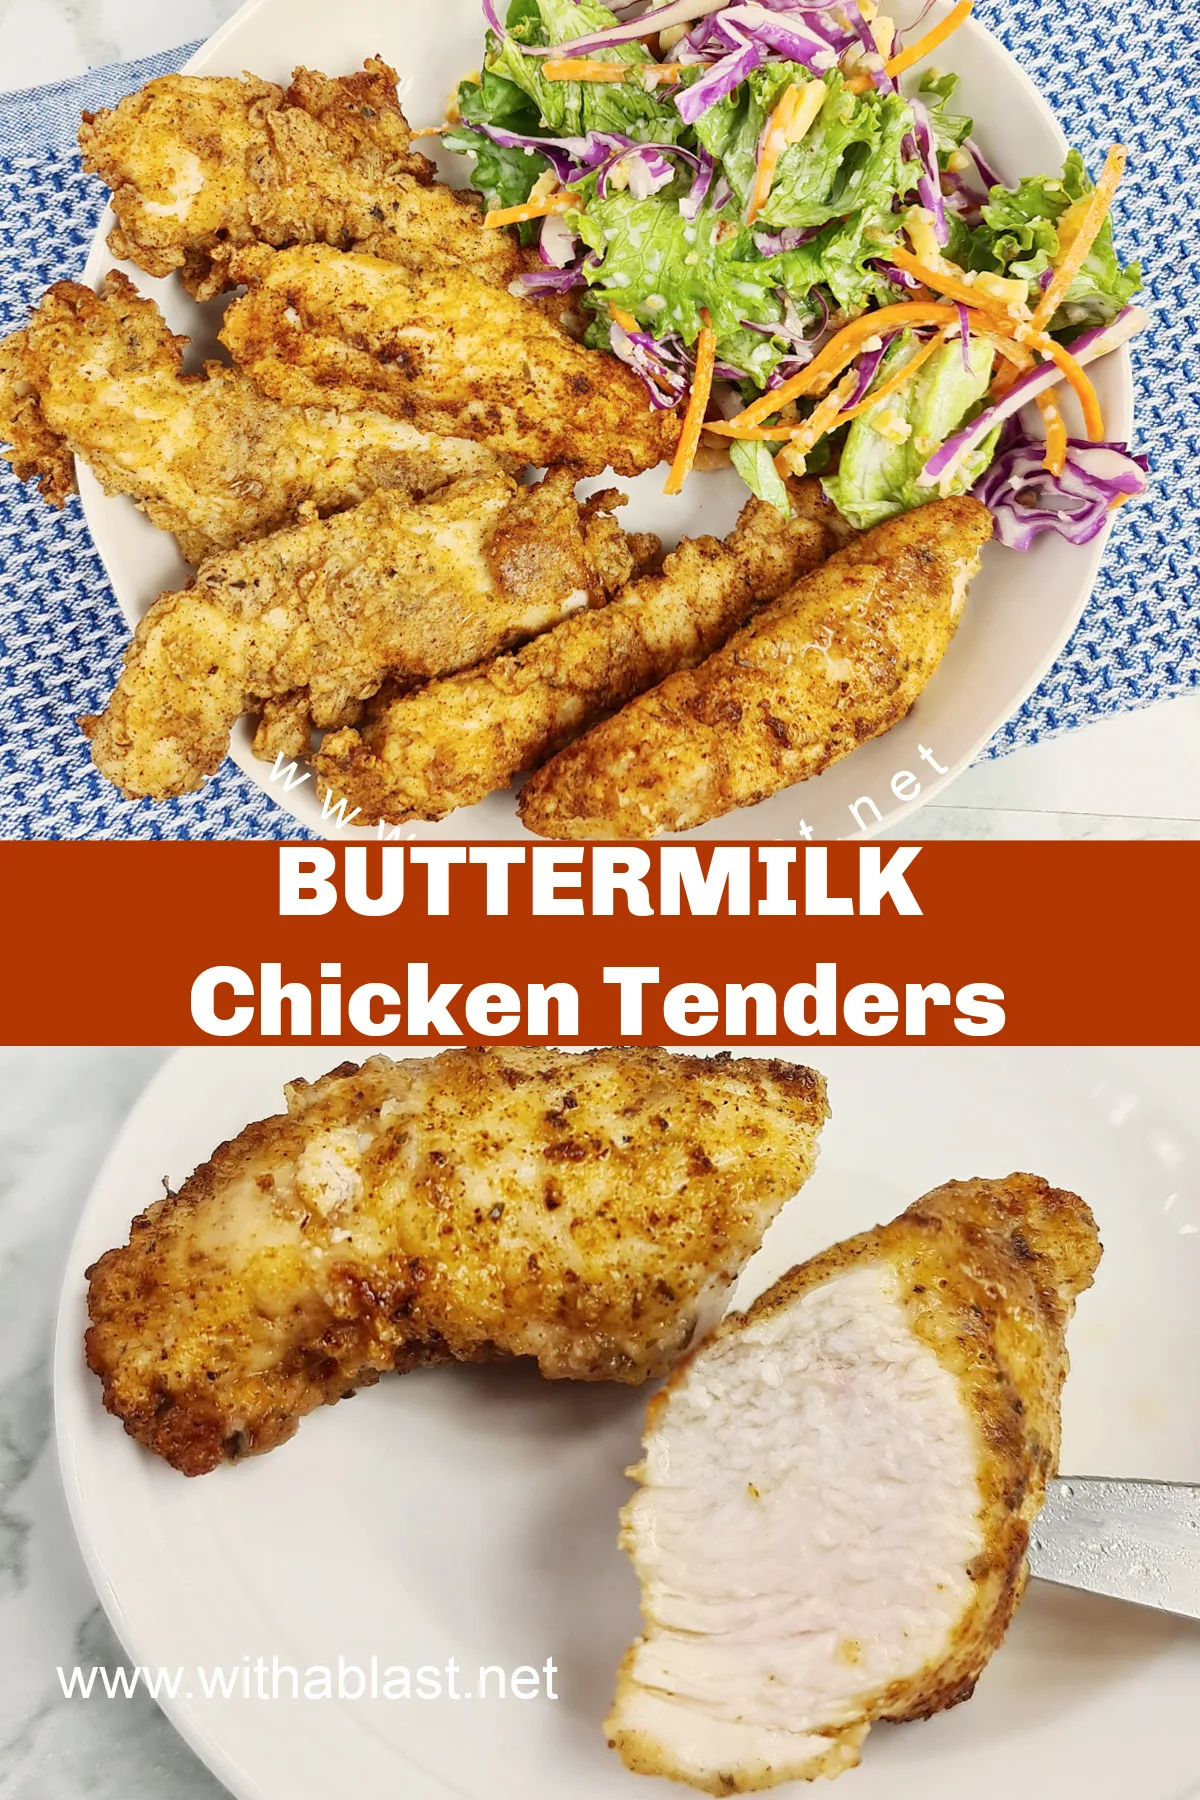 Buttermilk Chicken Tenders